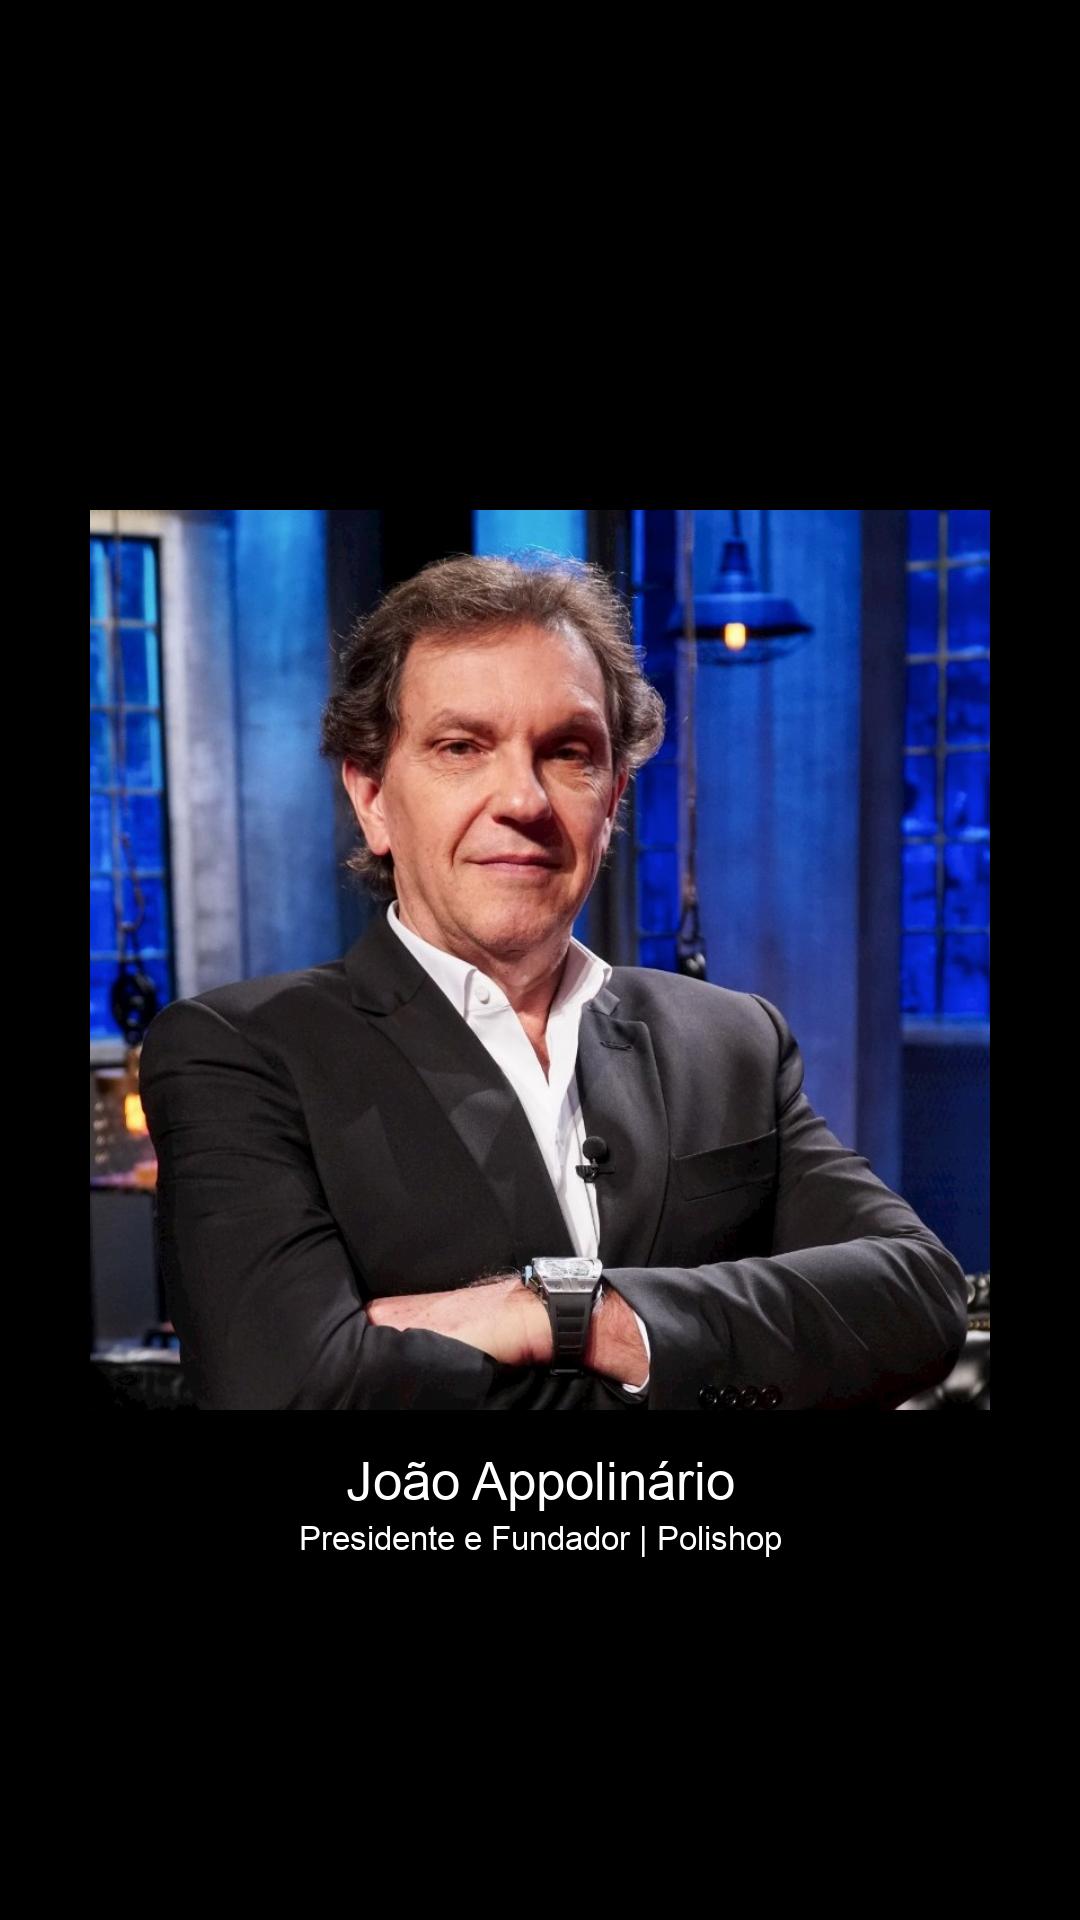 Biografia de João Appolinário: Quem é, História e Trajetória - G4